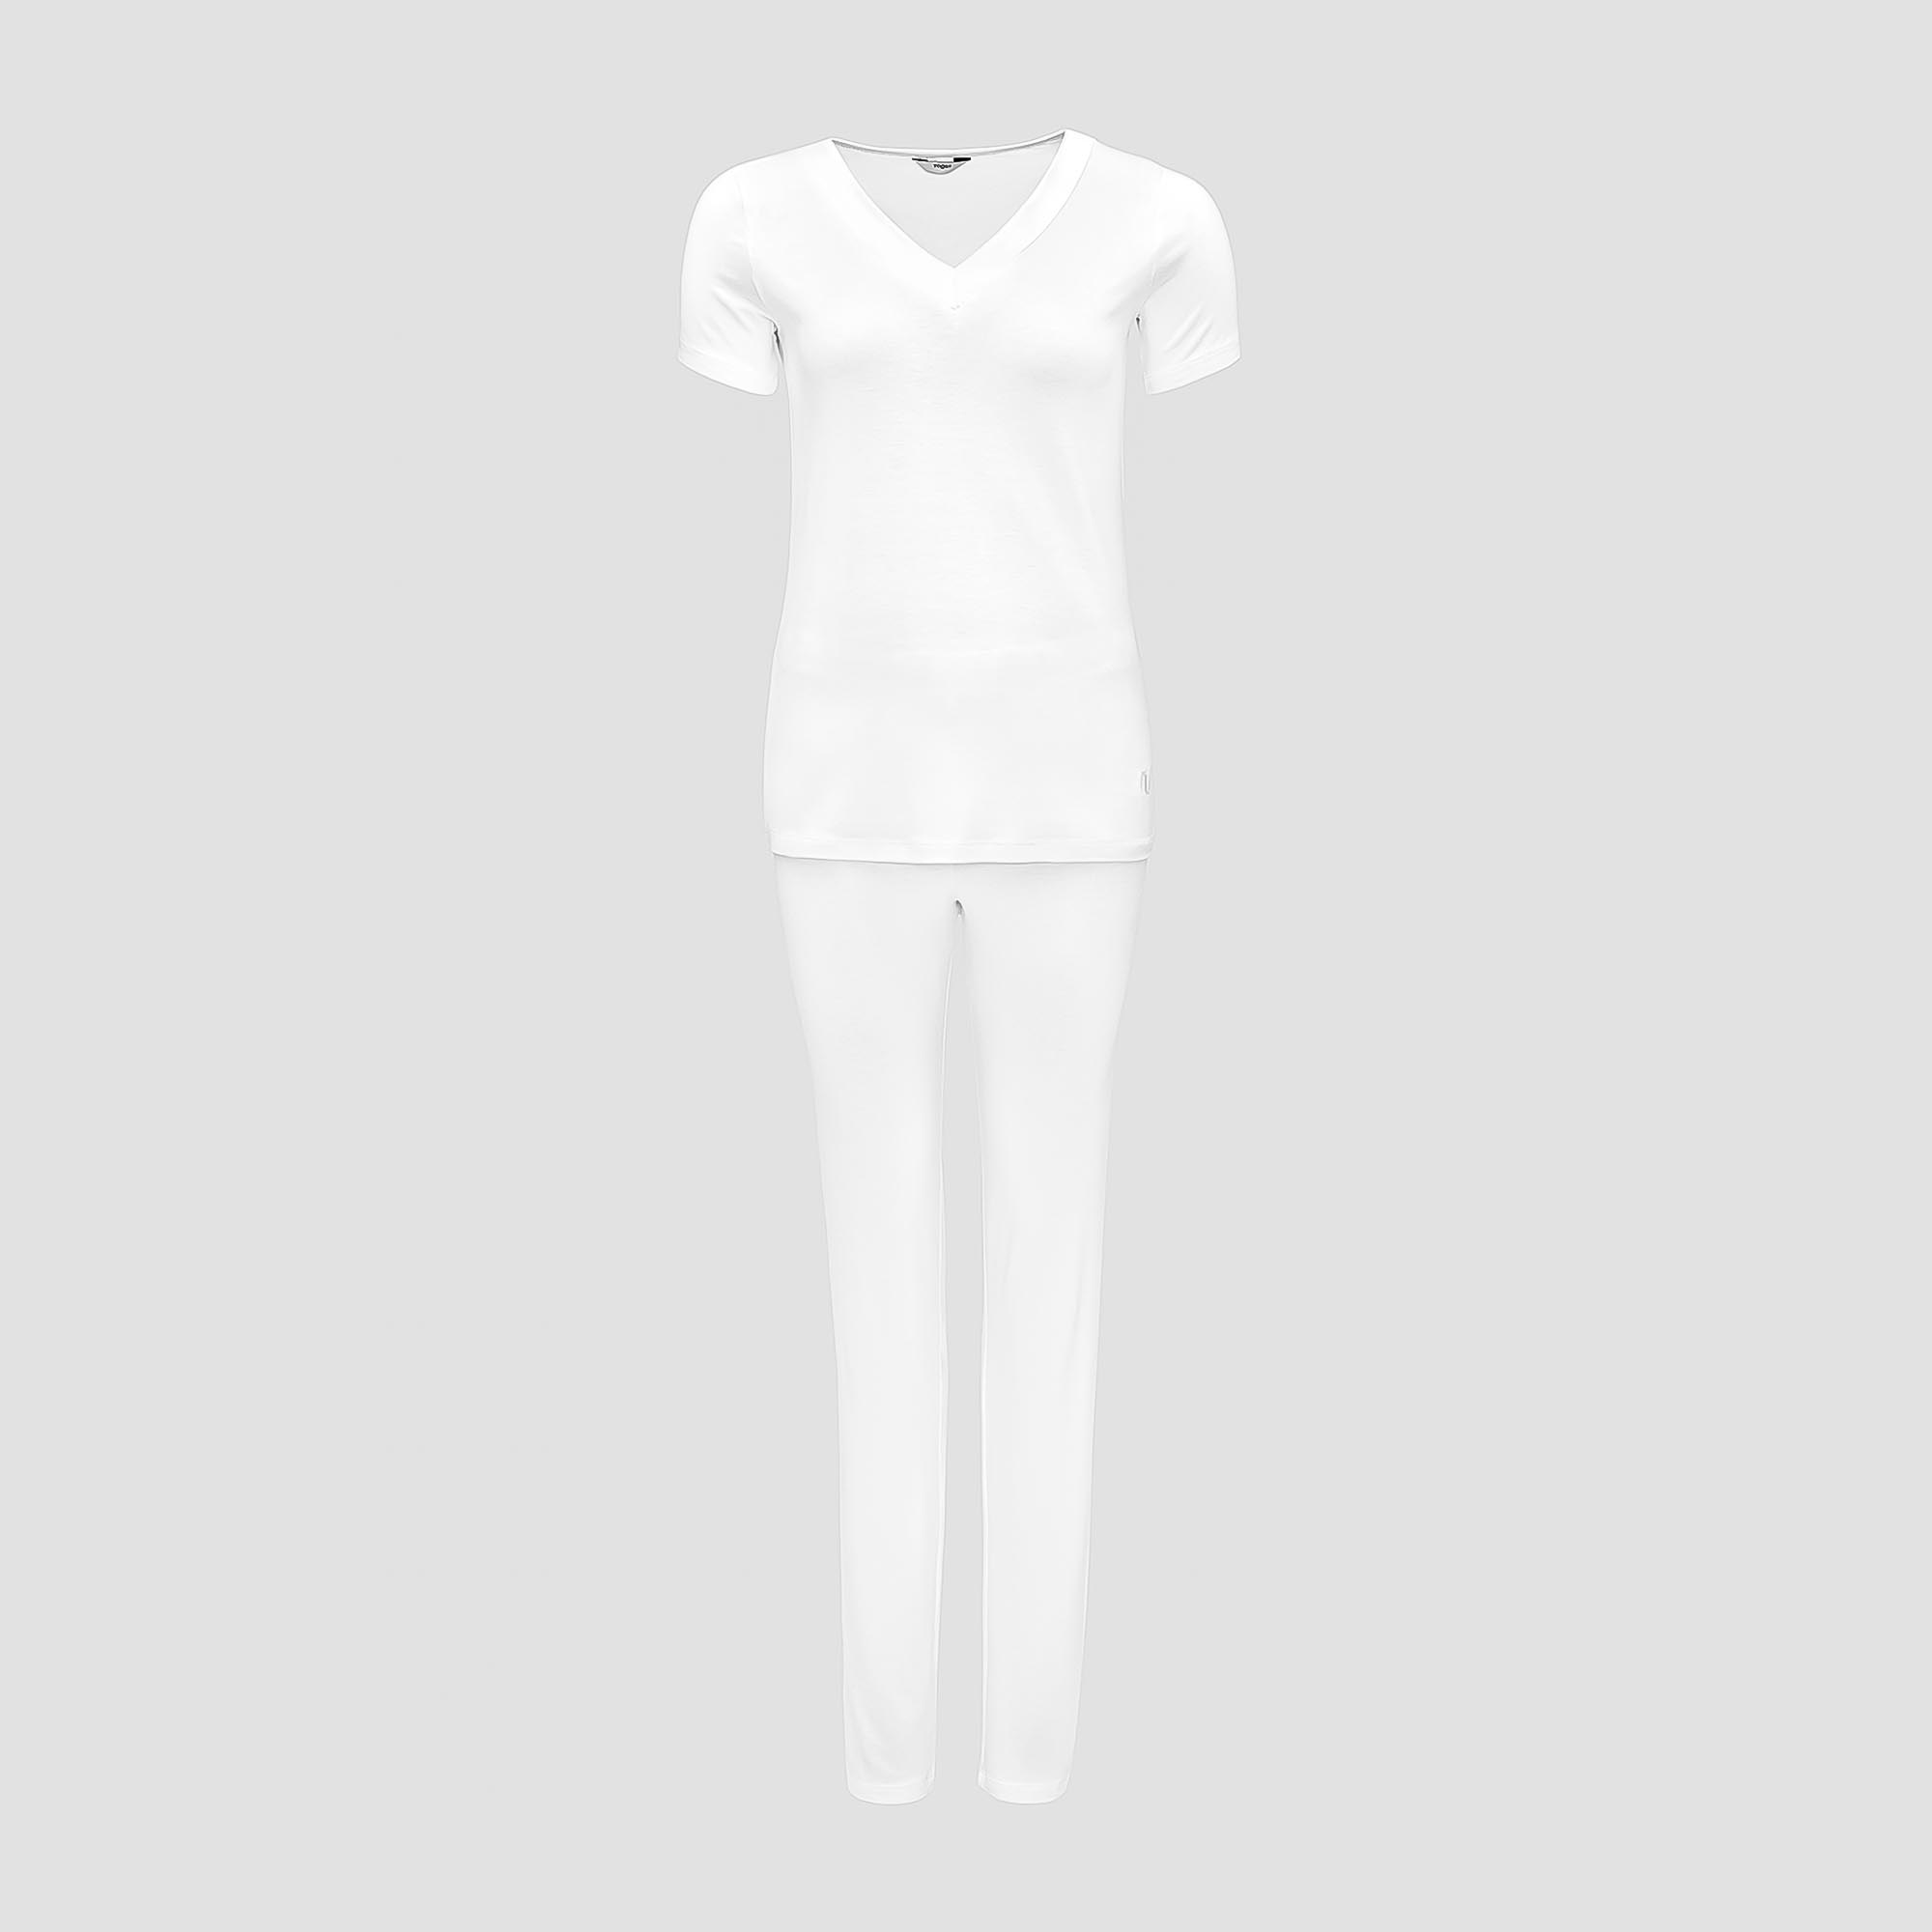 Пижама Togas Ингелла белая женская XL(50) 2 предмета пижама брюки